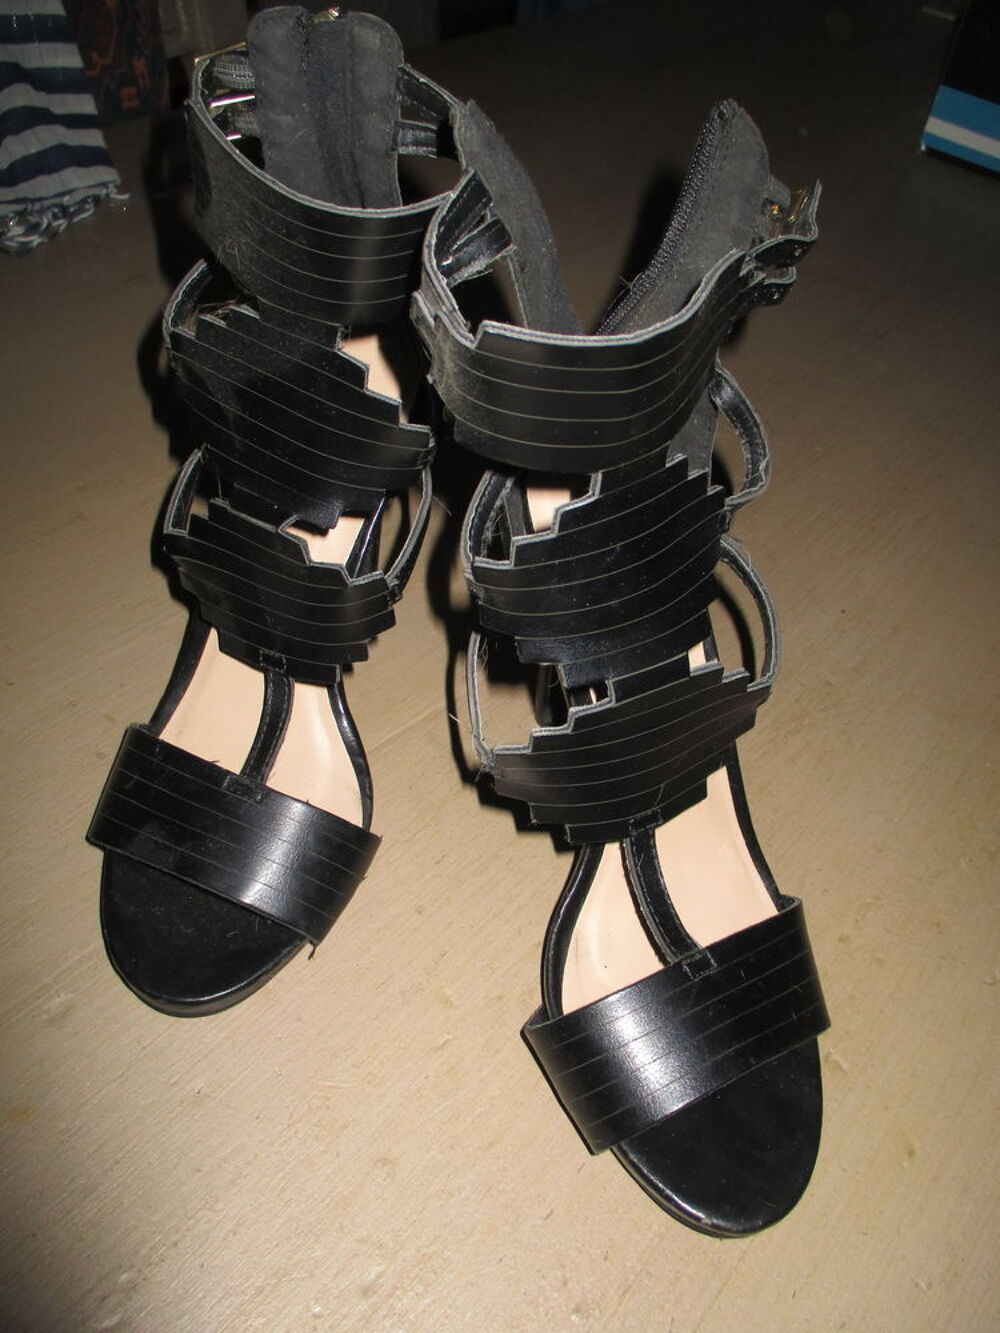 SANDALES FEMME TALONS HAUTS
COLORIS NOIR
Pointure 36,5/37 Chaussures